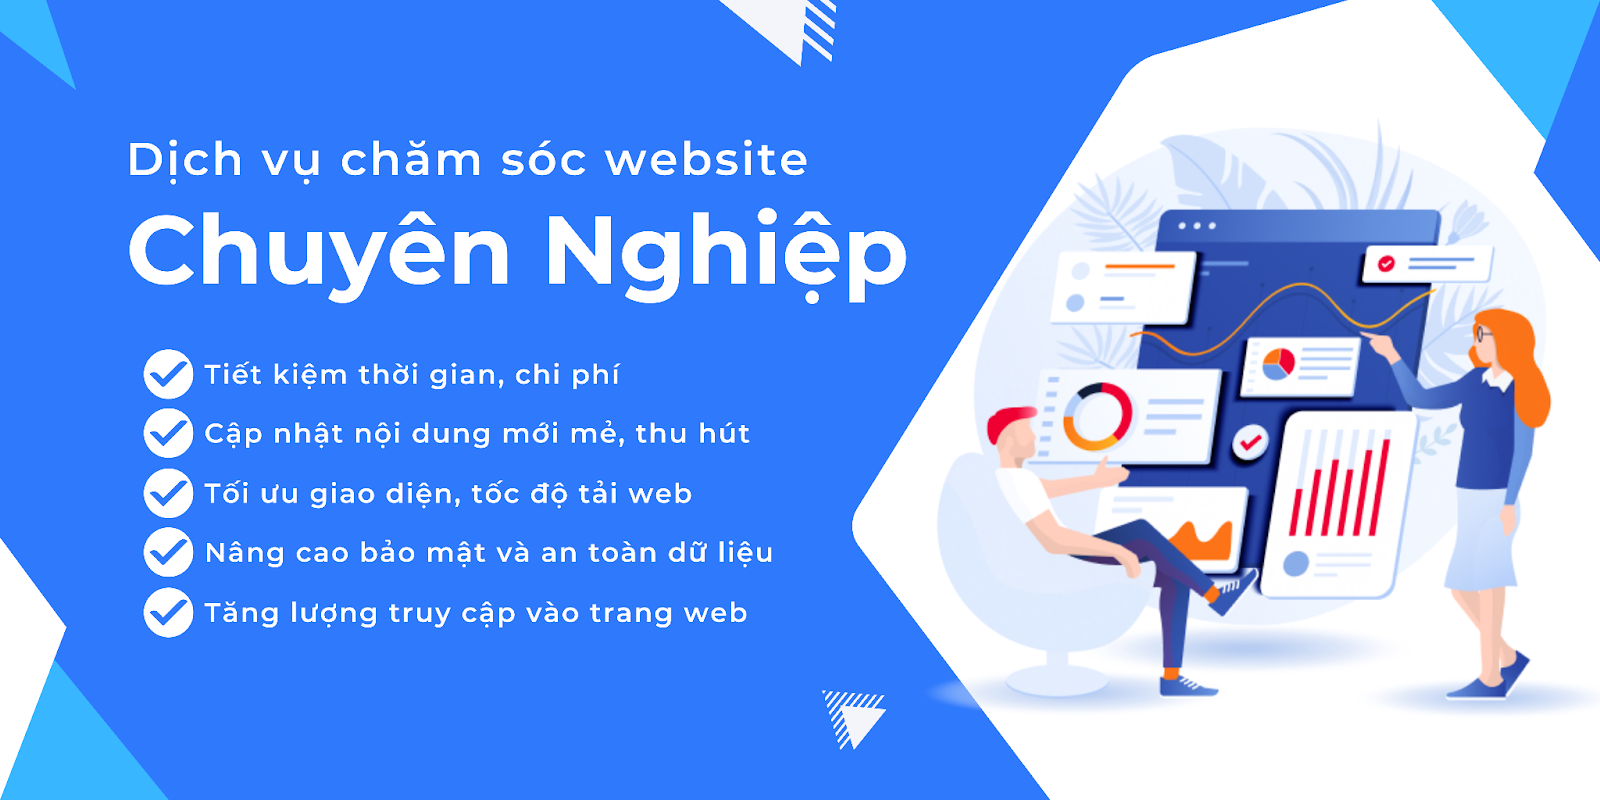 Dịch vụ chăm sóc website chuyên nghiệp tại Ment.vn